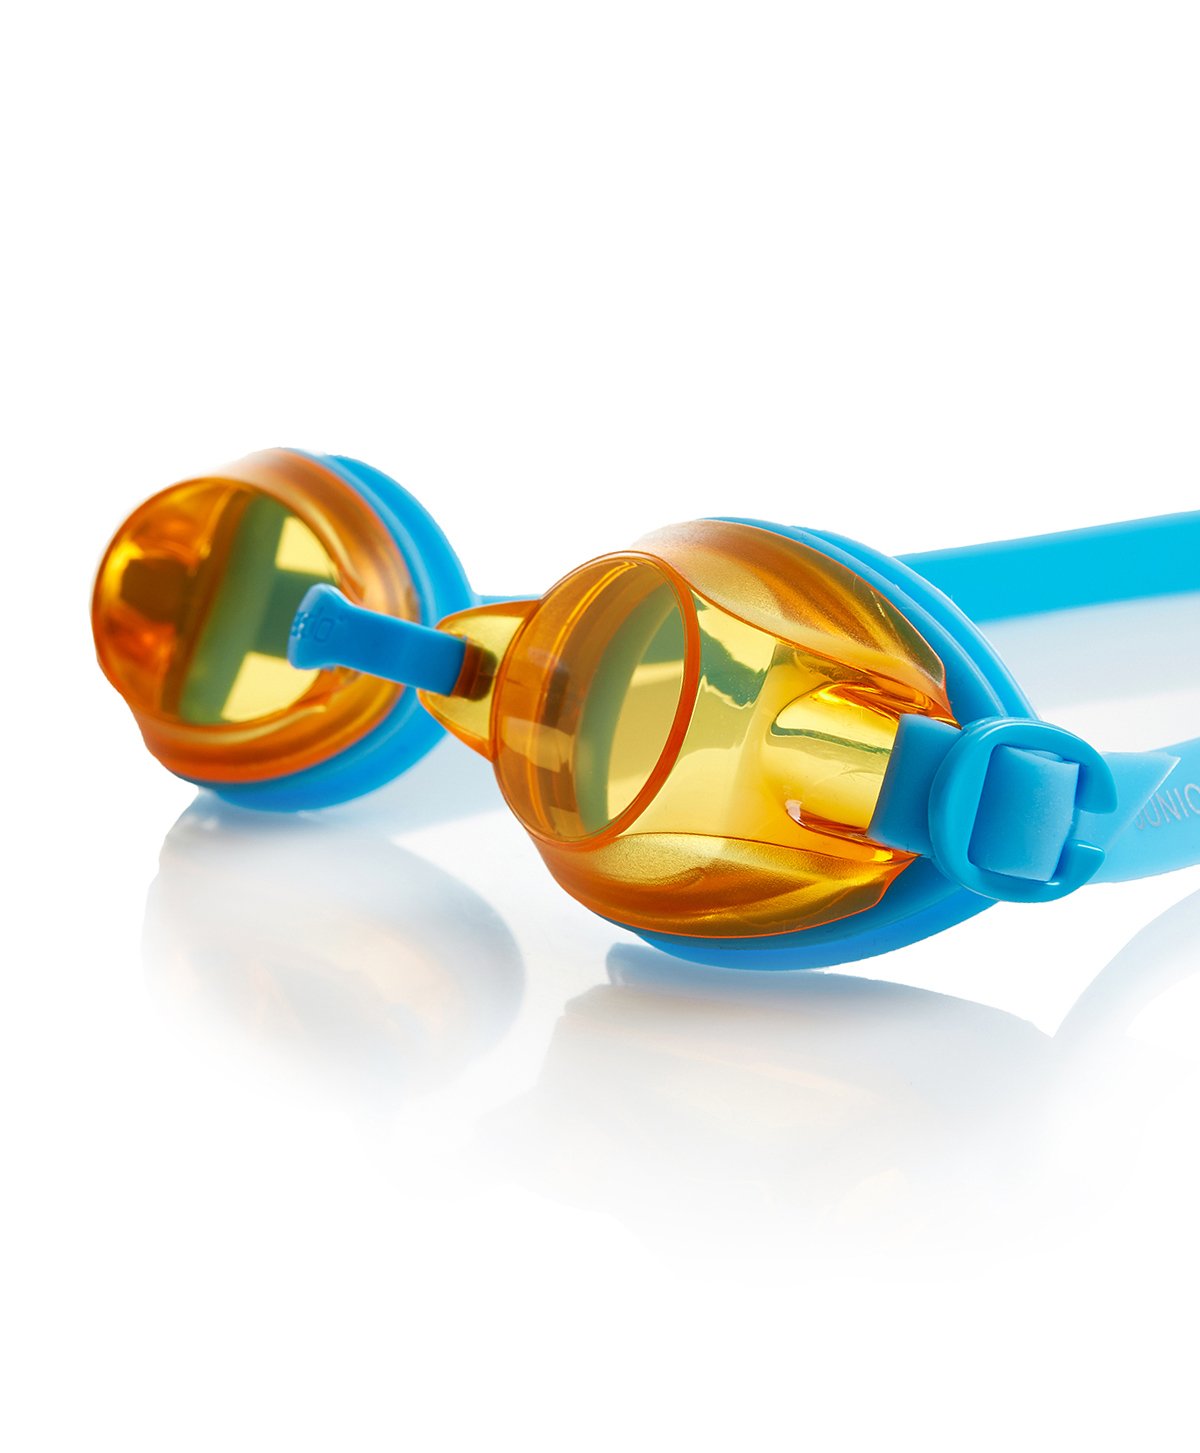 Speedo Jet junior Goggles, Junior One Size (Blue/Orange) - Best Price online Prokicksports.com